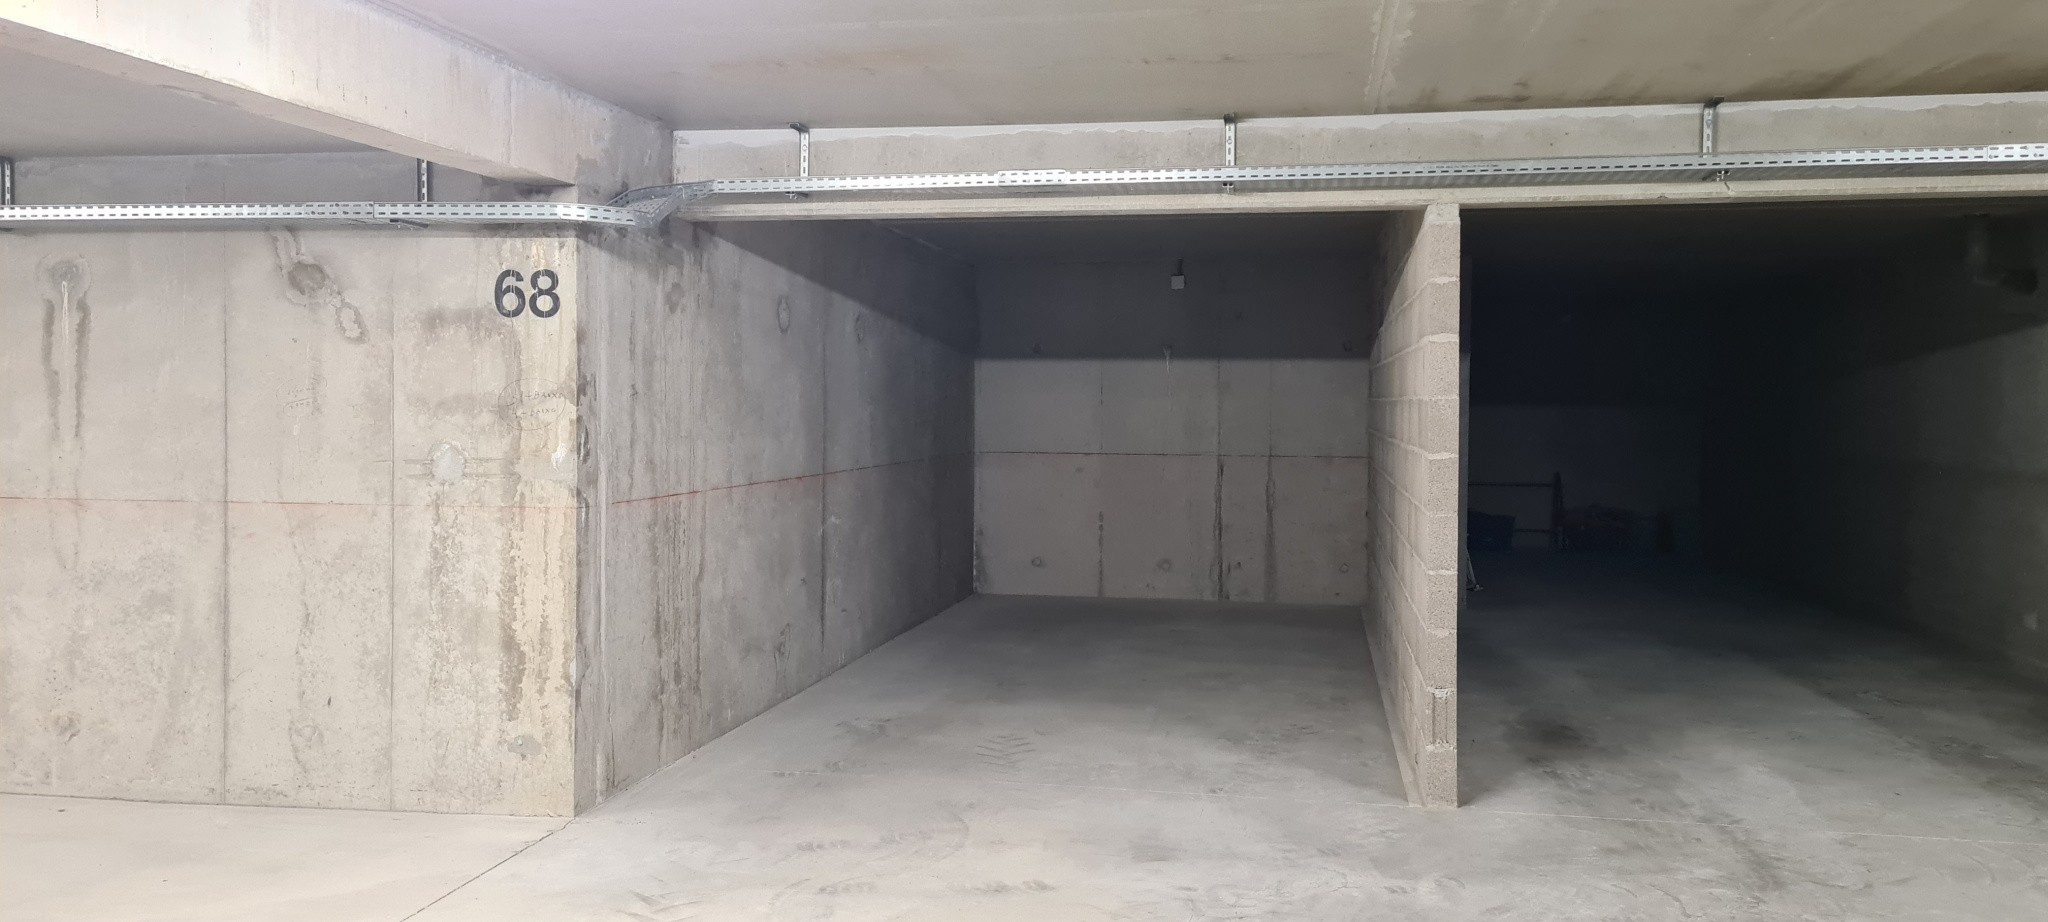 Location Garage / Parking à Colmar 0 pièce